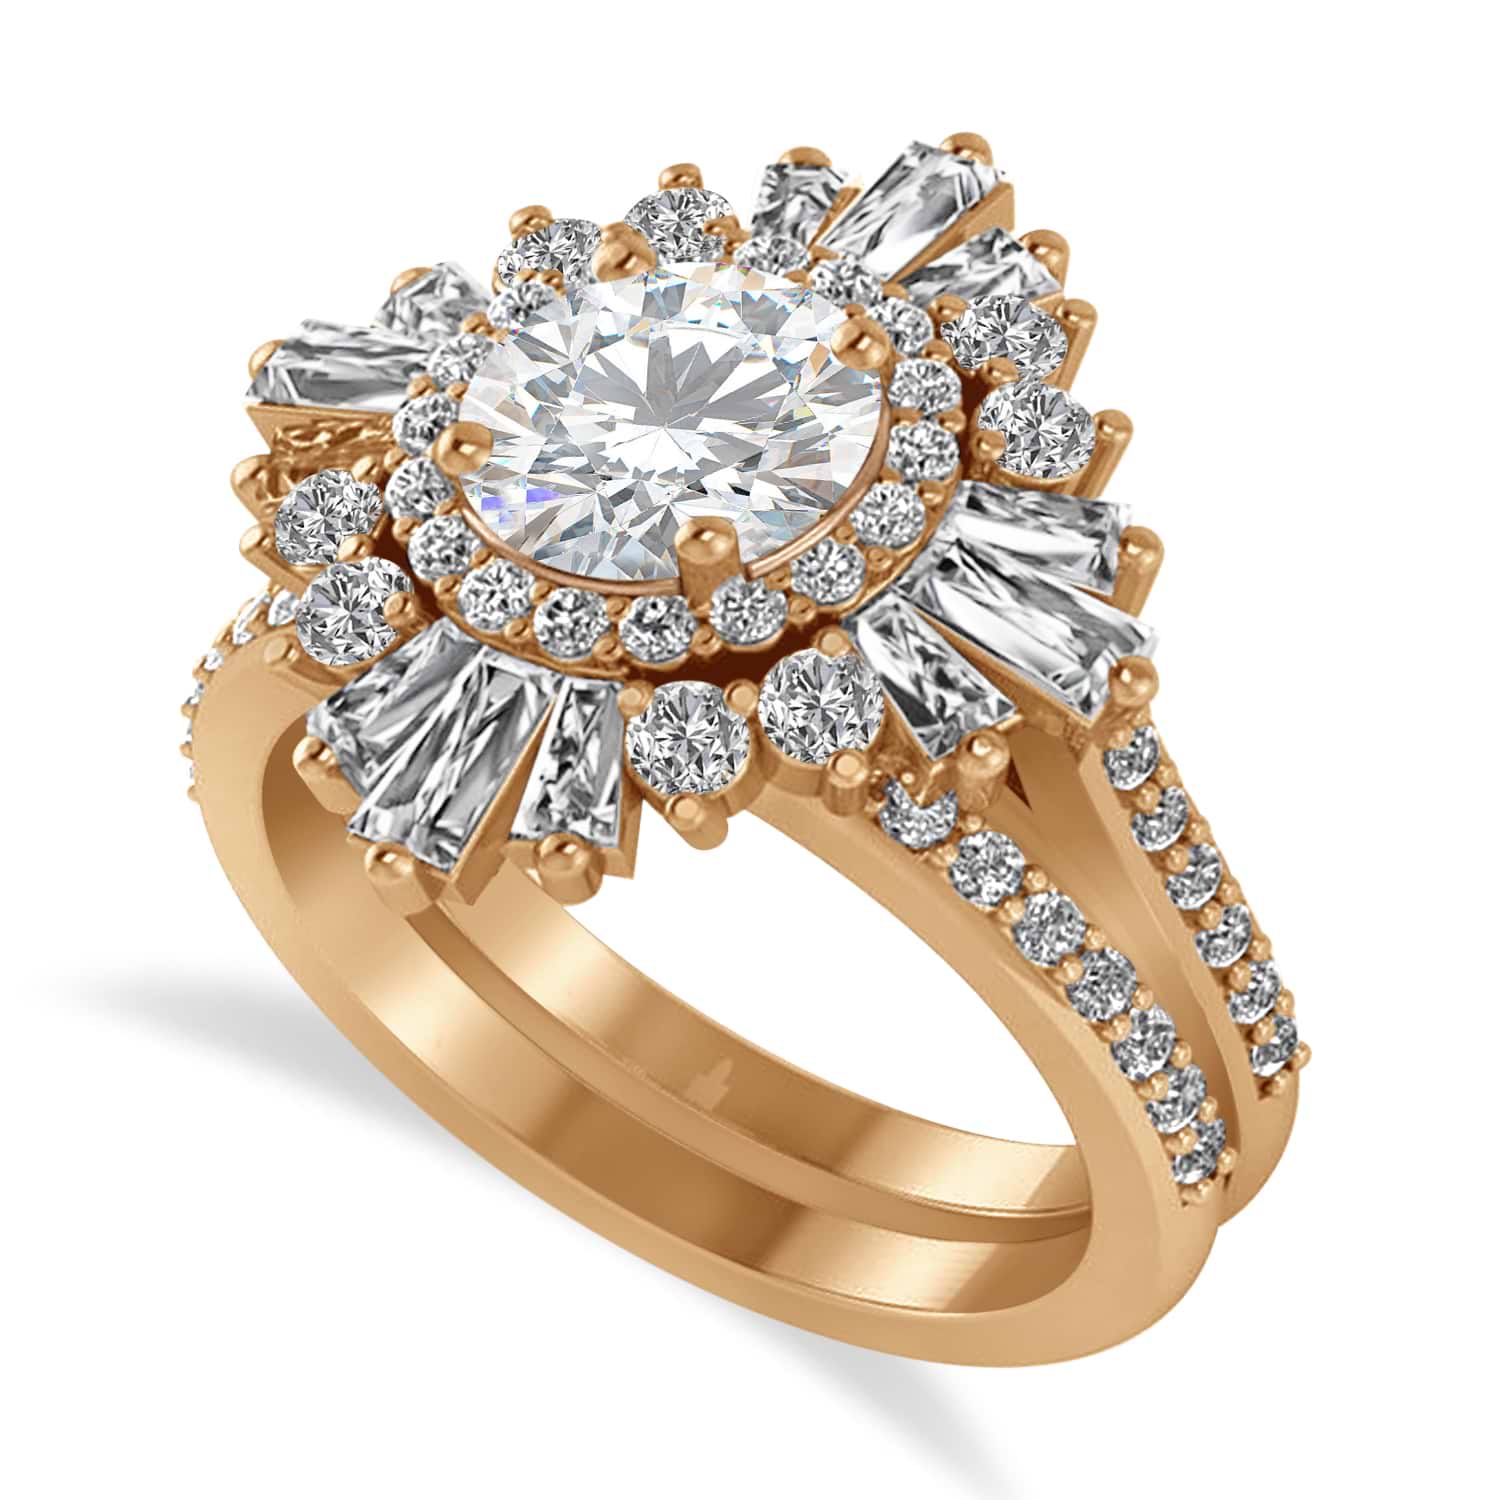 Moissanite & Diamond Ballerina Engagement Ring 14k Rose Gold (2.74 ctw)